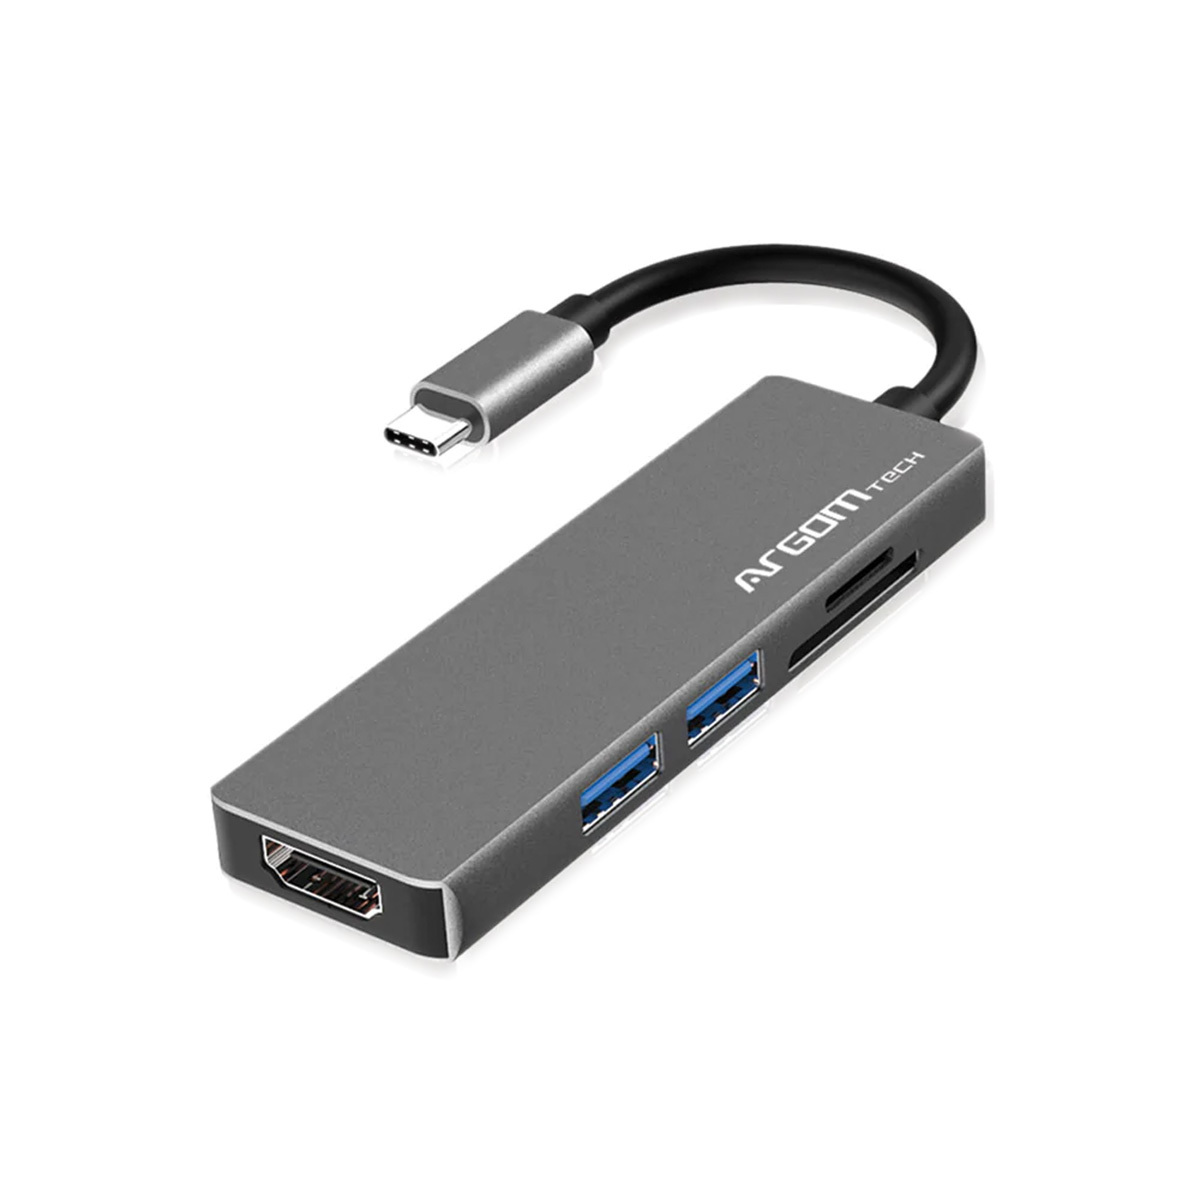  Adaptador de USB C a USB 3.0 A hembra, 1/2 pie de largo, color  gris, Gris espacial : Electrónica